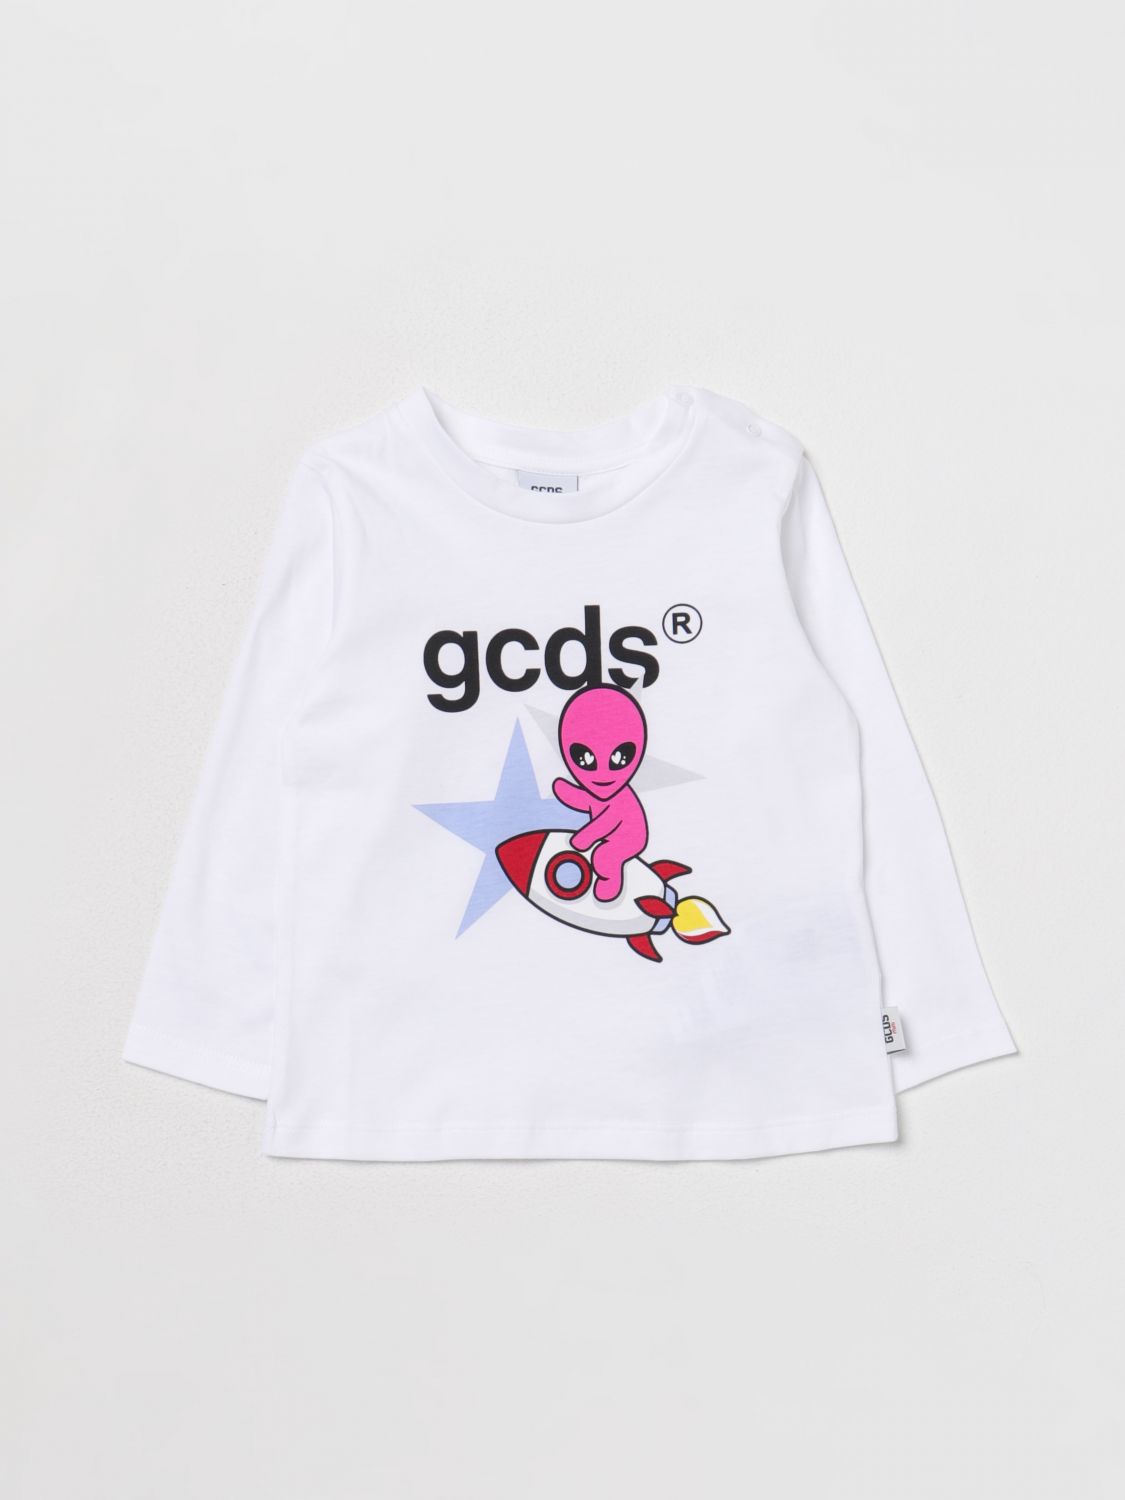 GCDS T-SHIRT GCDS KIDS KIDS COLOR WHITE,E79843001